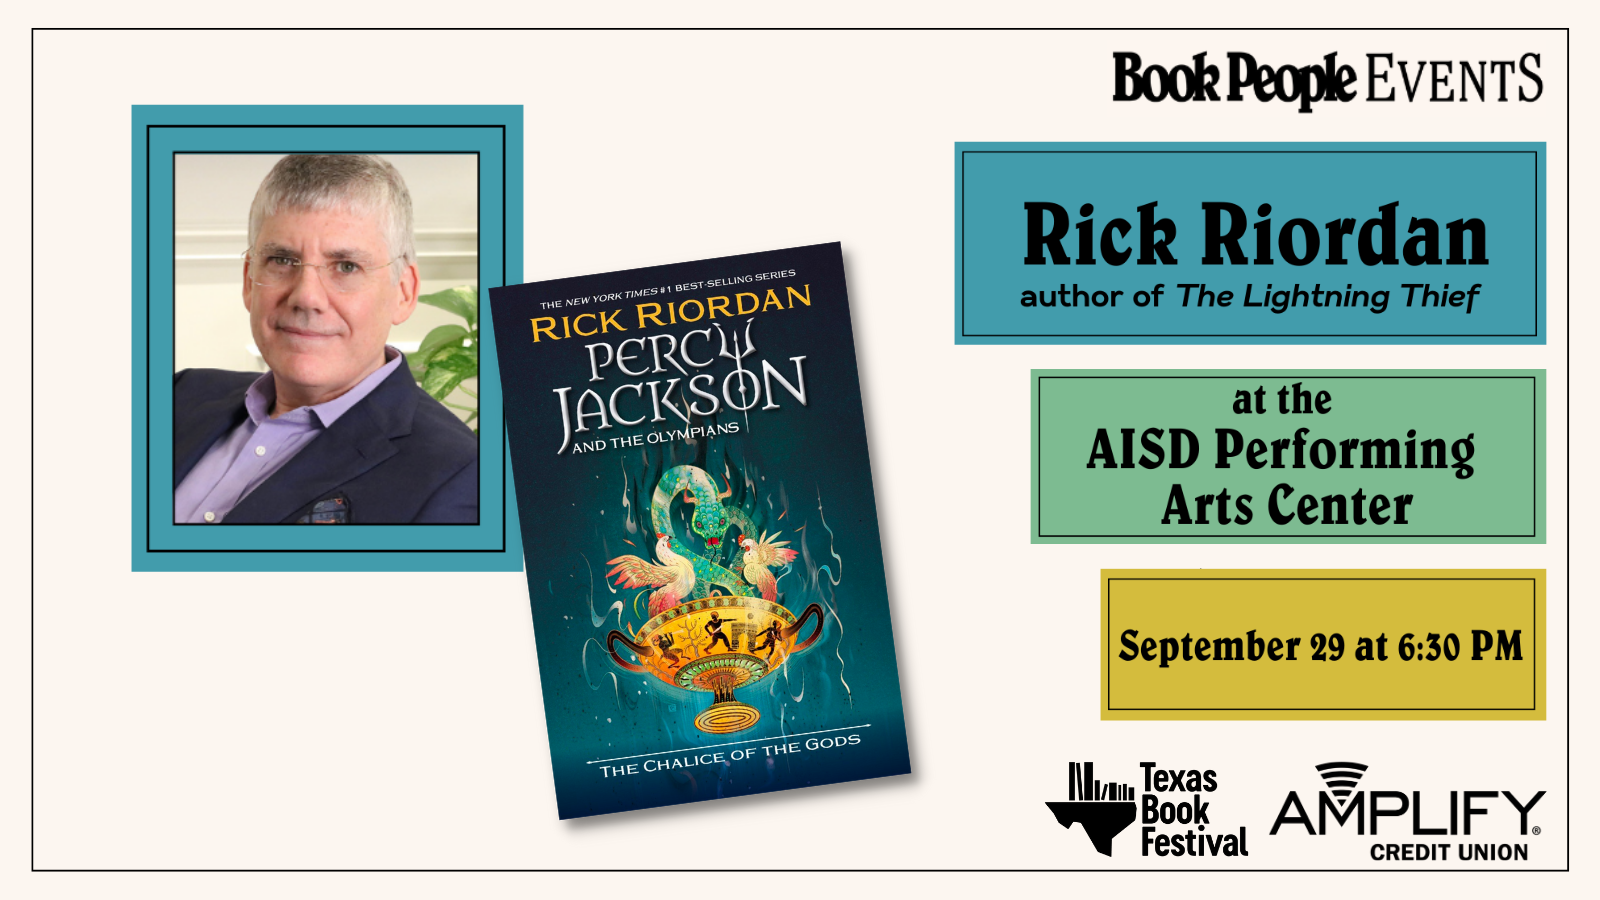 Rick Riordian at the AISD Performing Arts Center September 29 at 6:30 pm